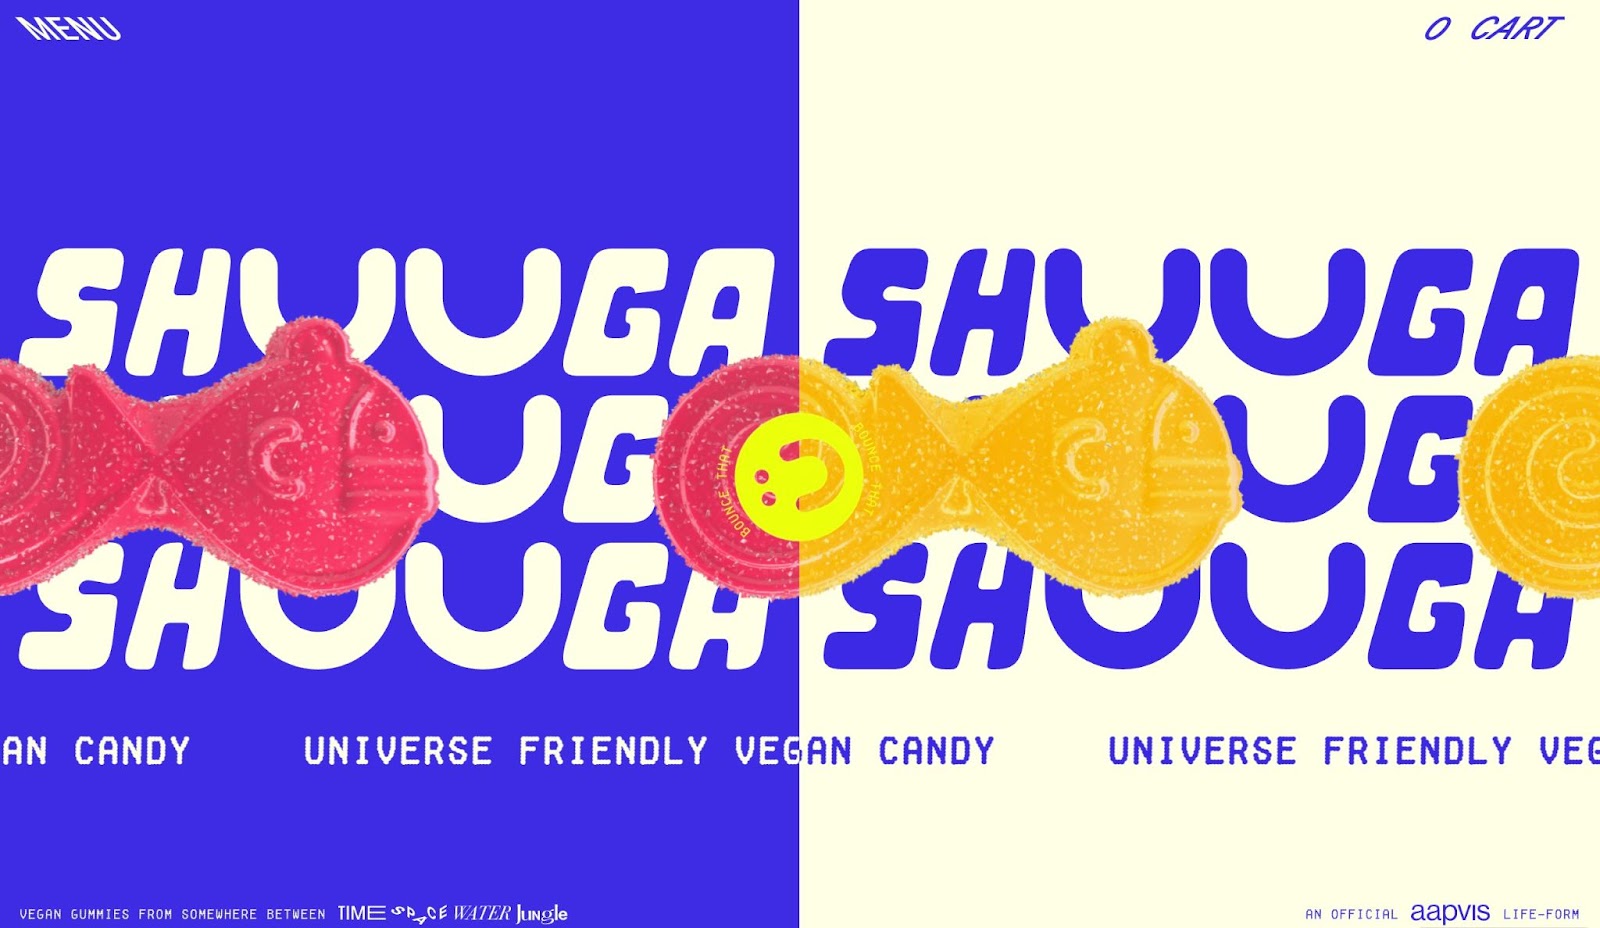 Shuga 的站點標題，垂直分成兩半。左側為藍色，奶油色文字為 SHUGA。右側與奶油色背景和藍色文本相同。背景上方是他們純素魚形糖果的粉色和橙色效果圖。